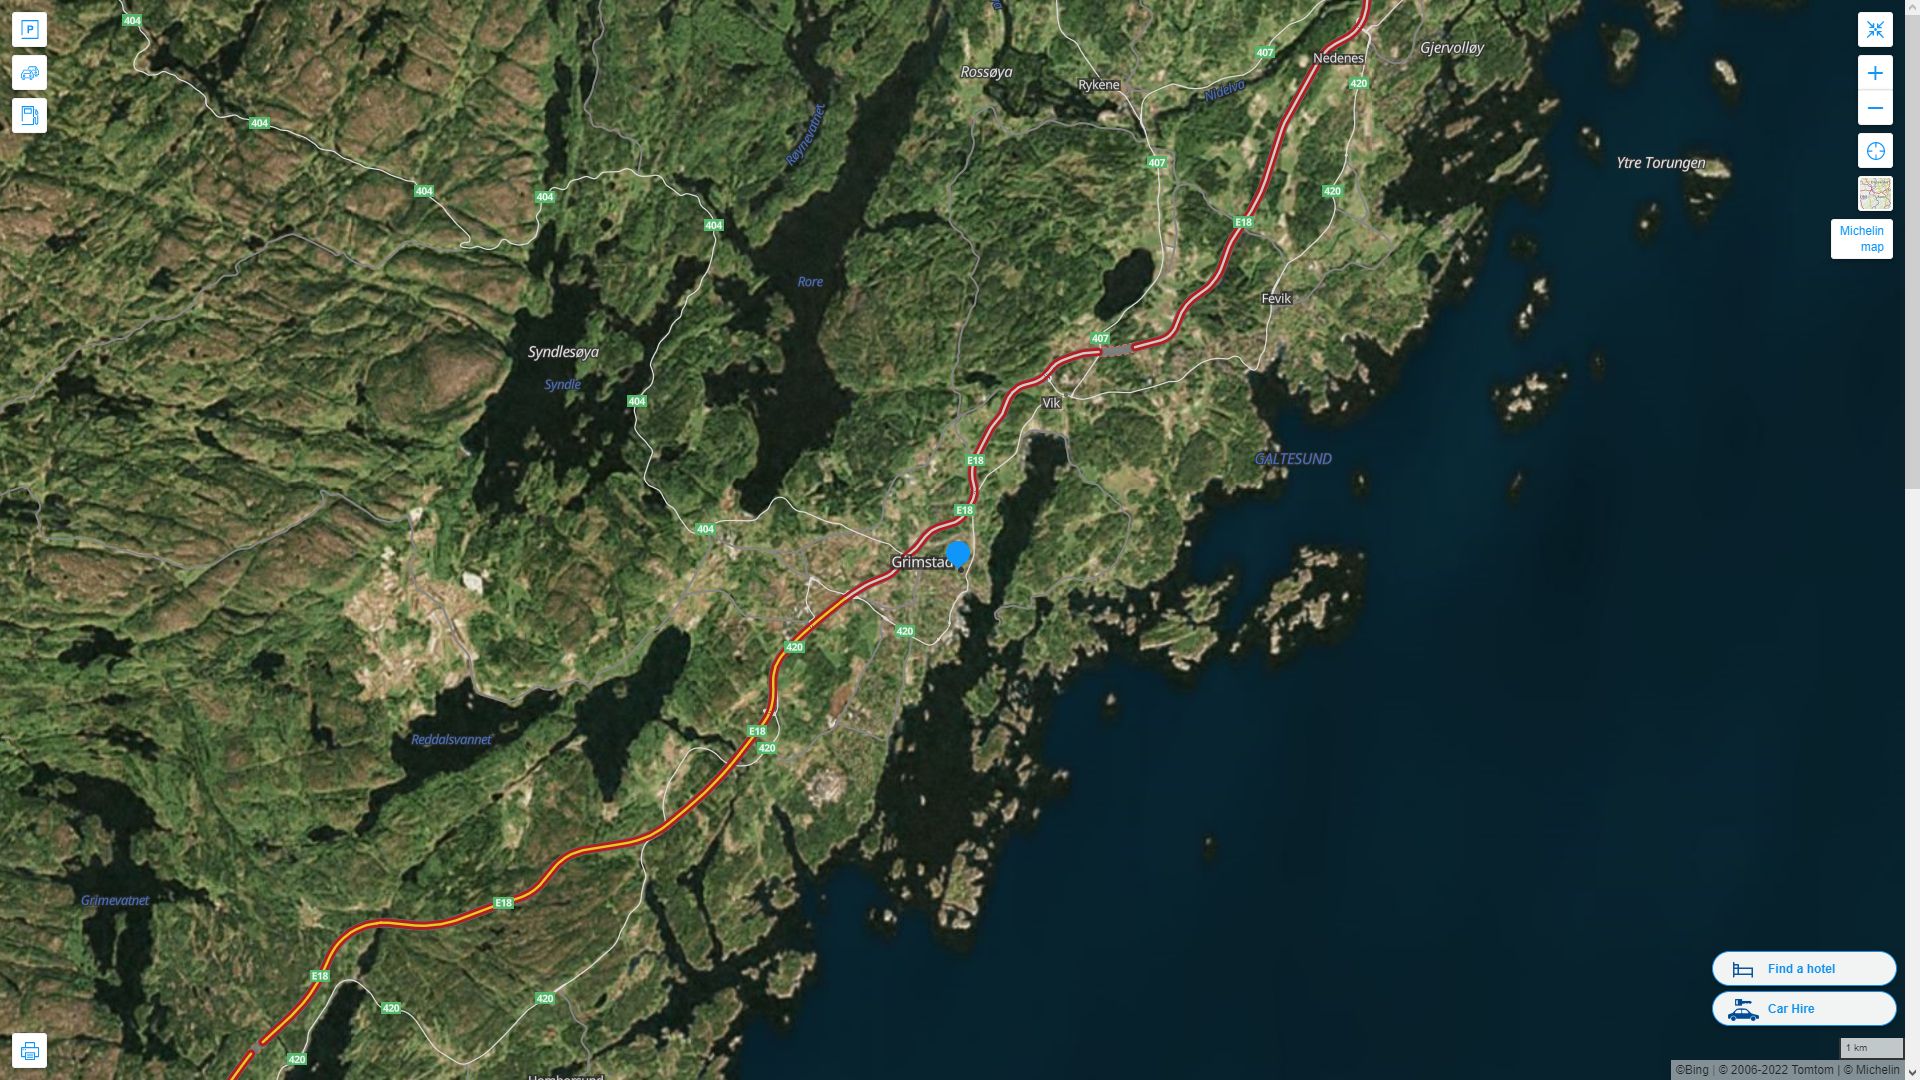 Grimstad Norvege Autoroute et carte routiere avec vue satellite